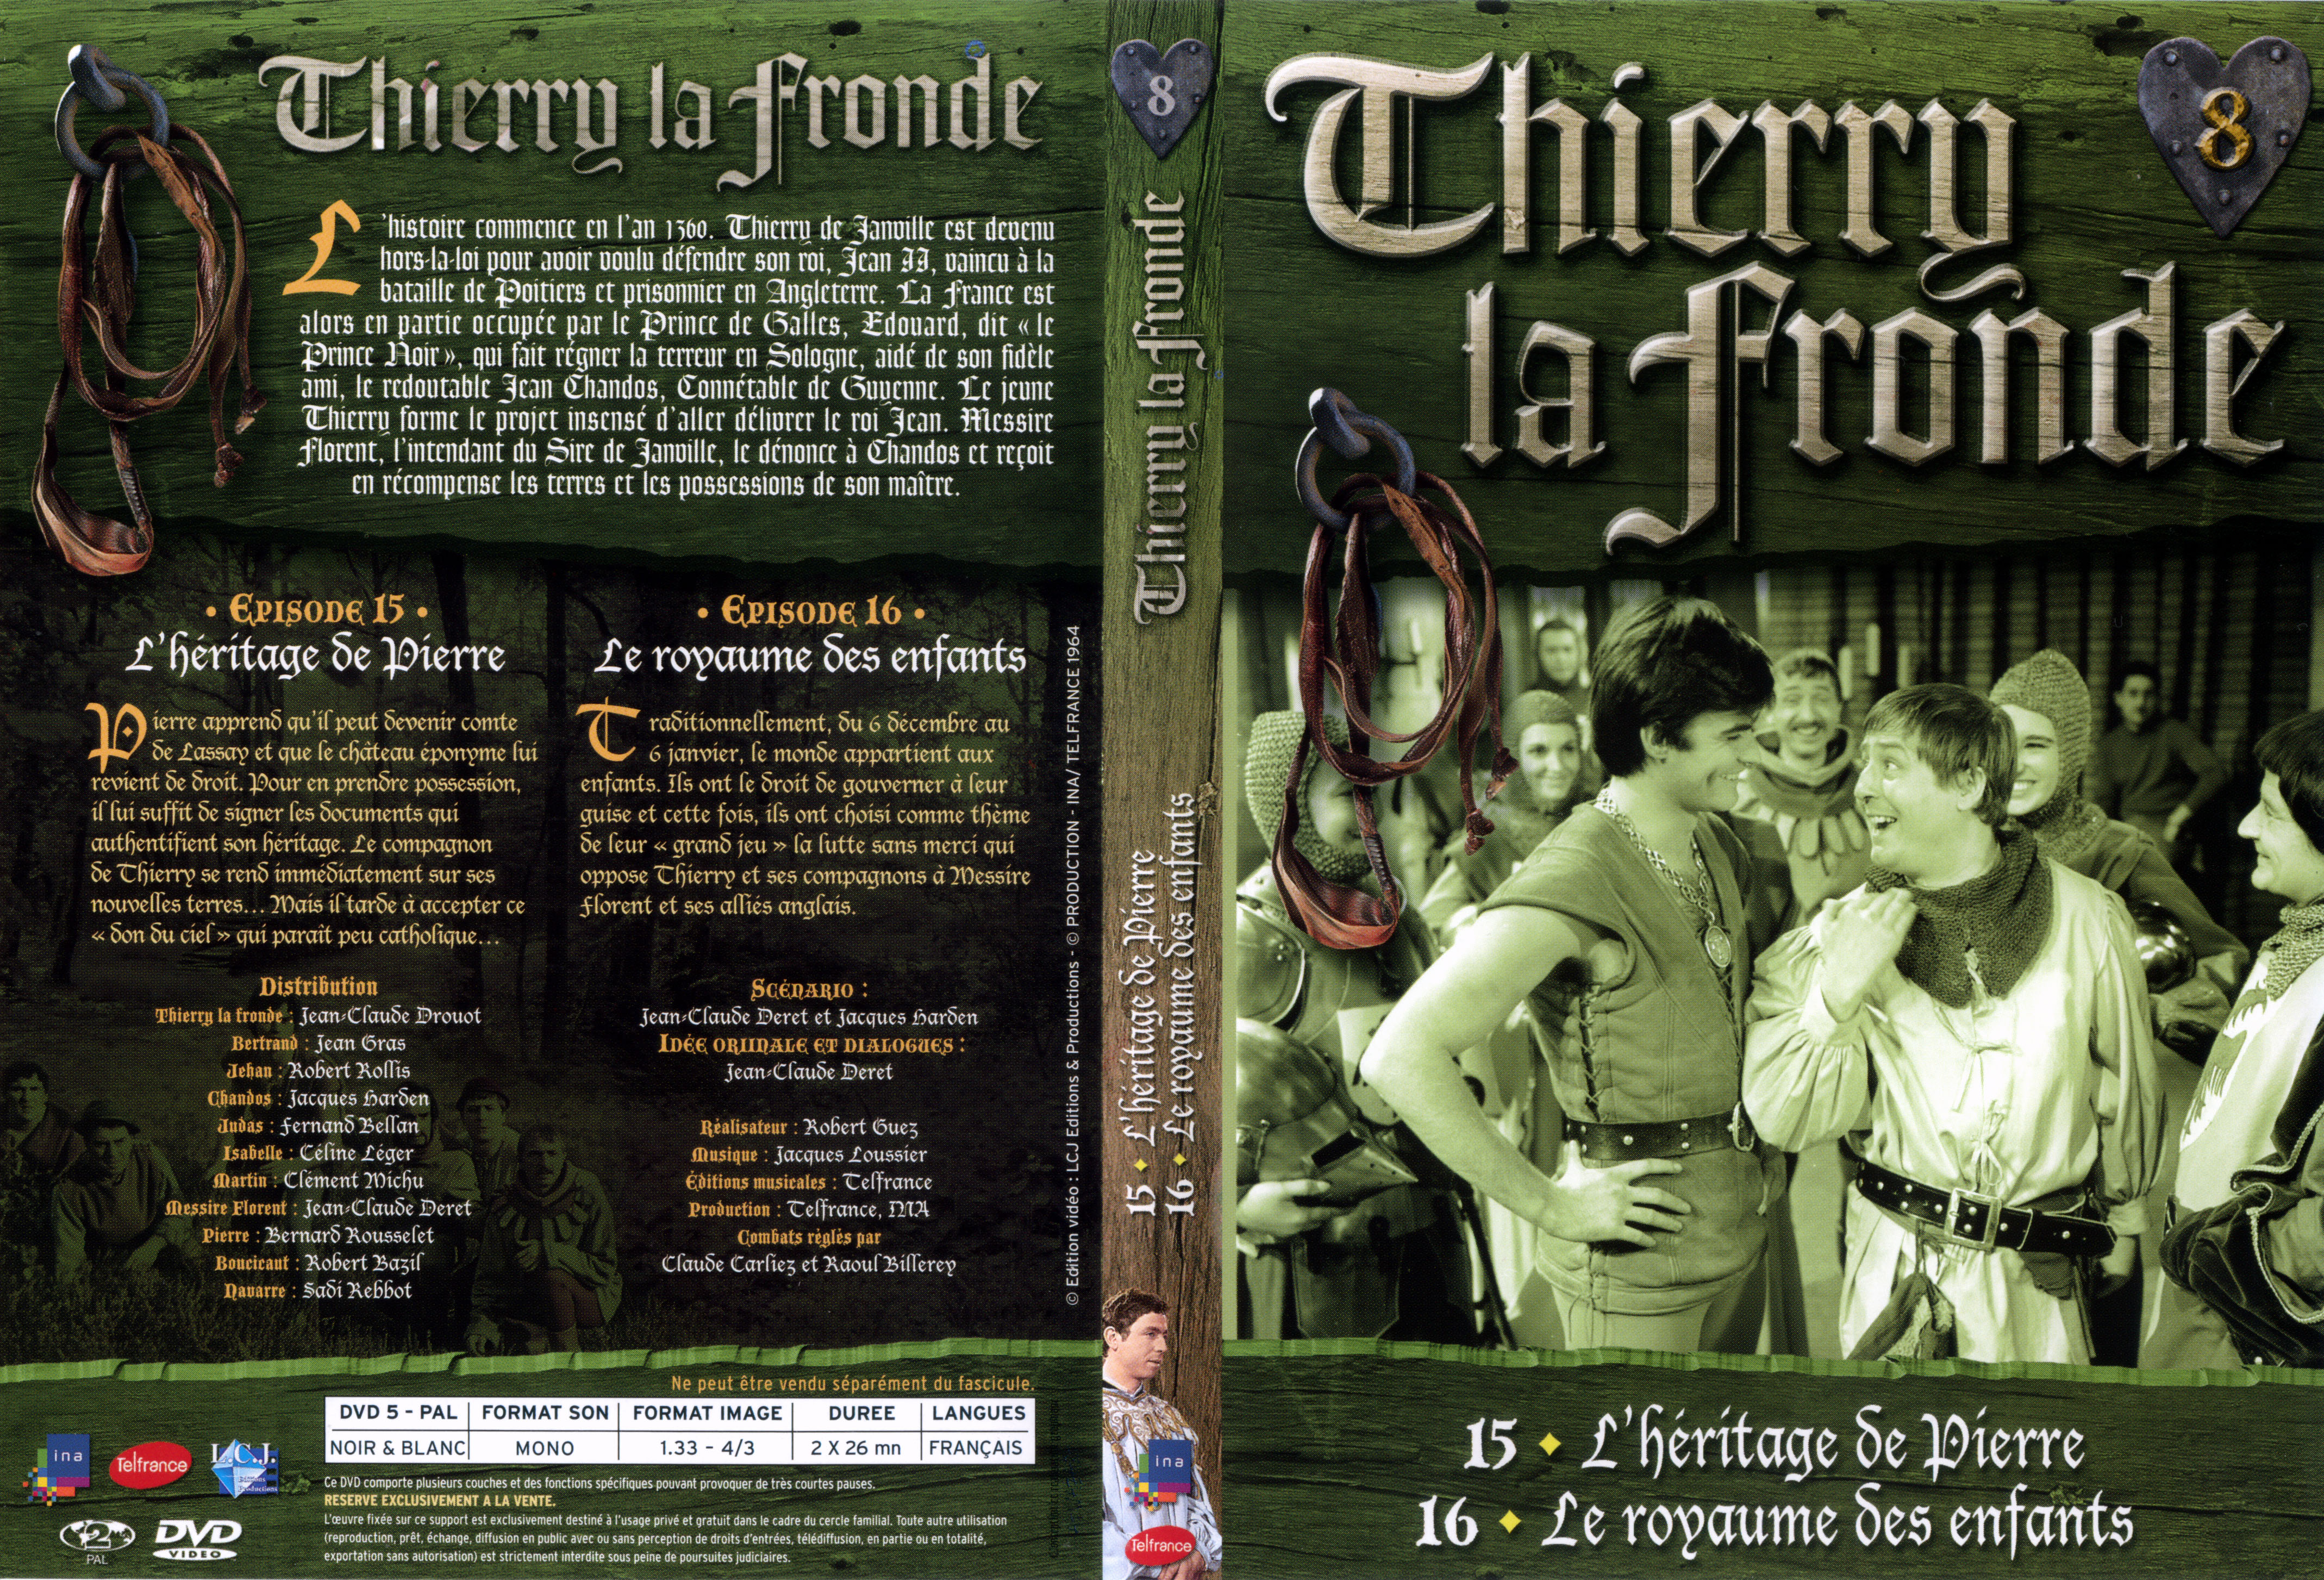 Jaquette DVD Thierry la Fronde vol 08